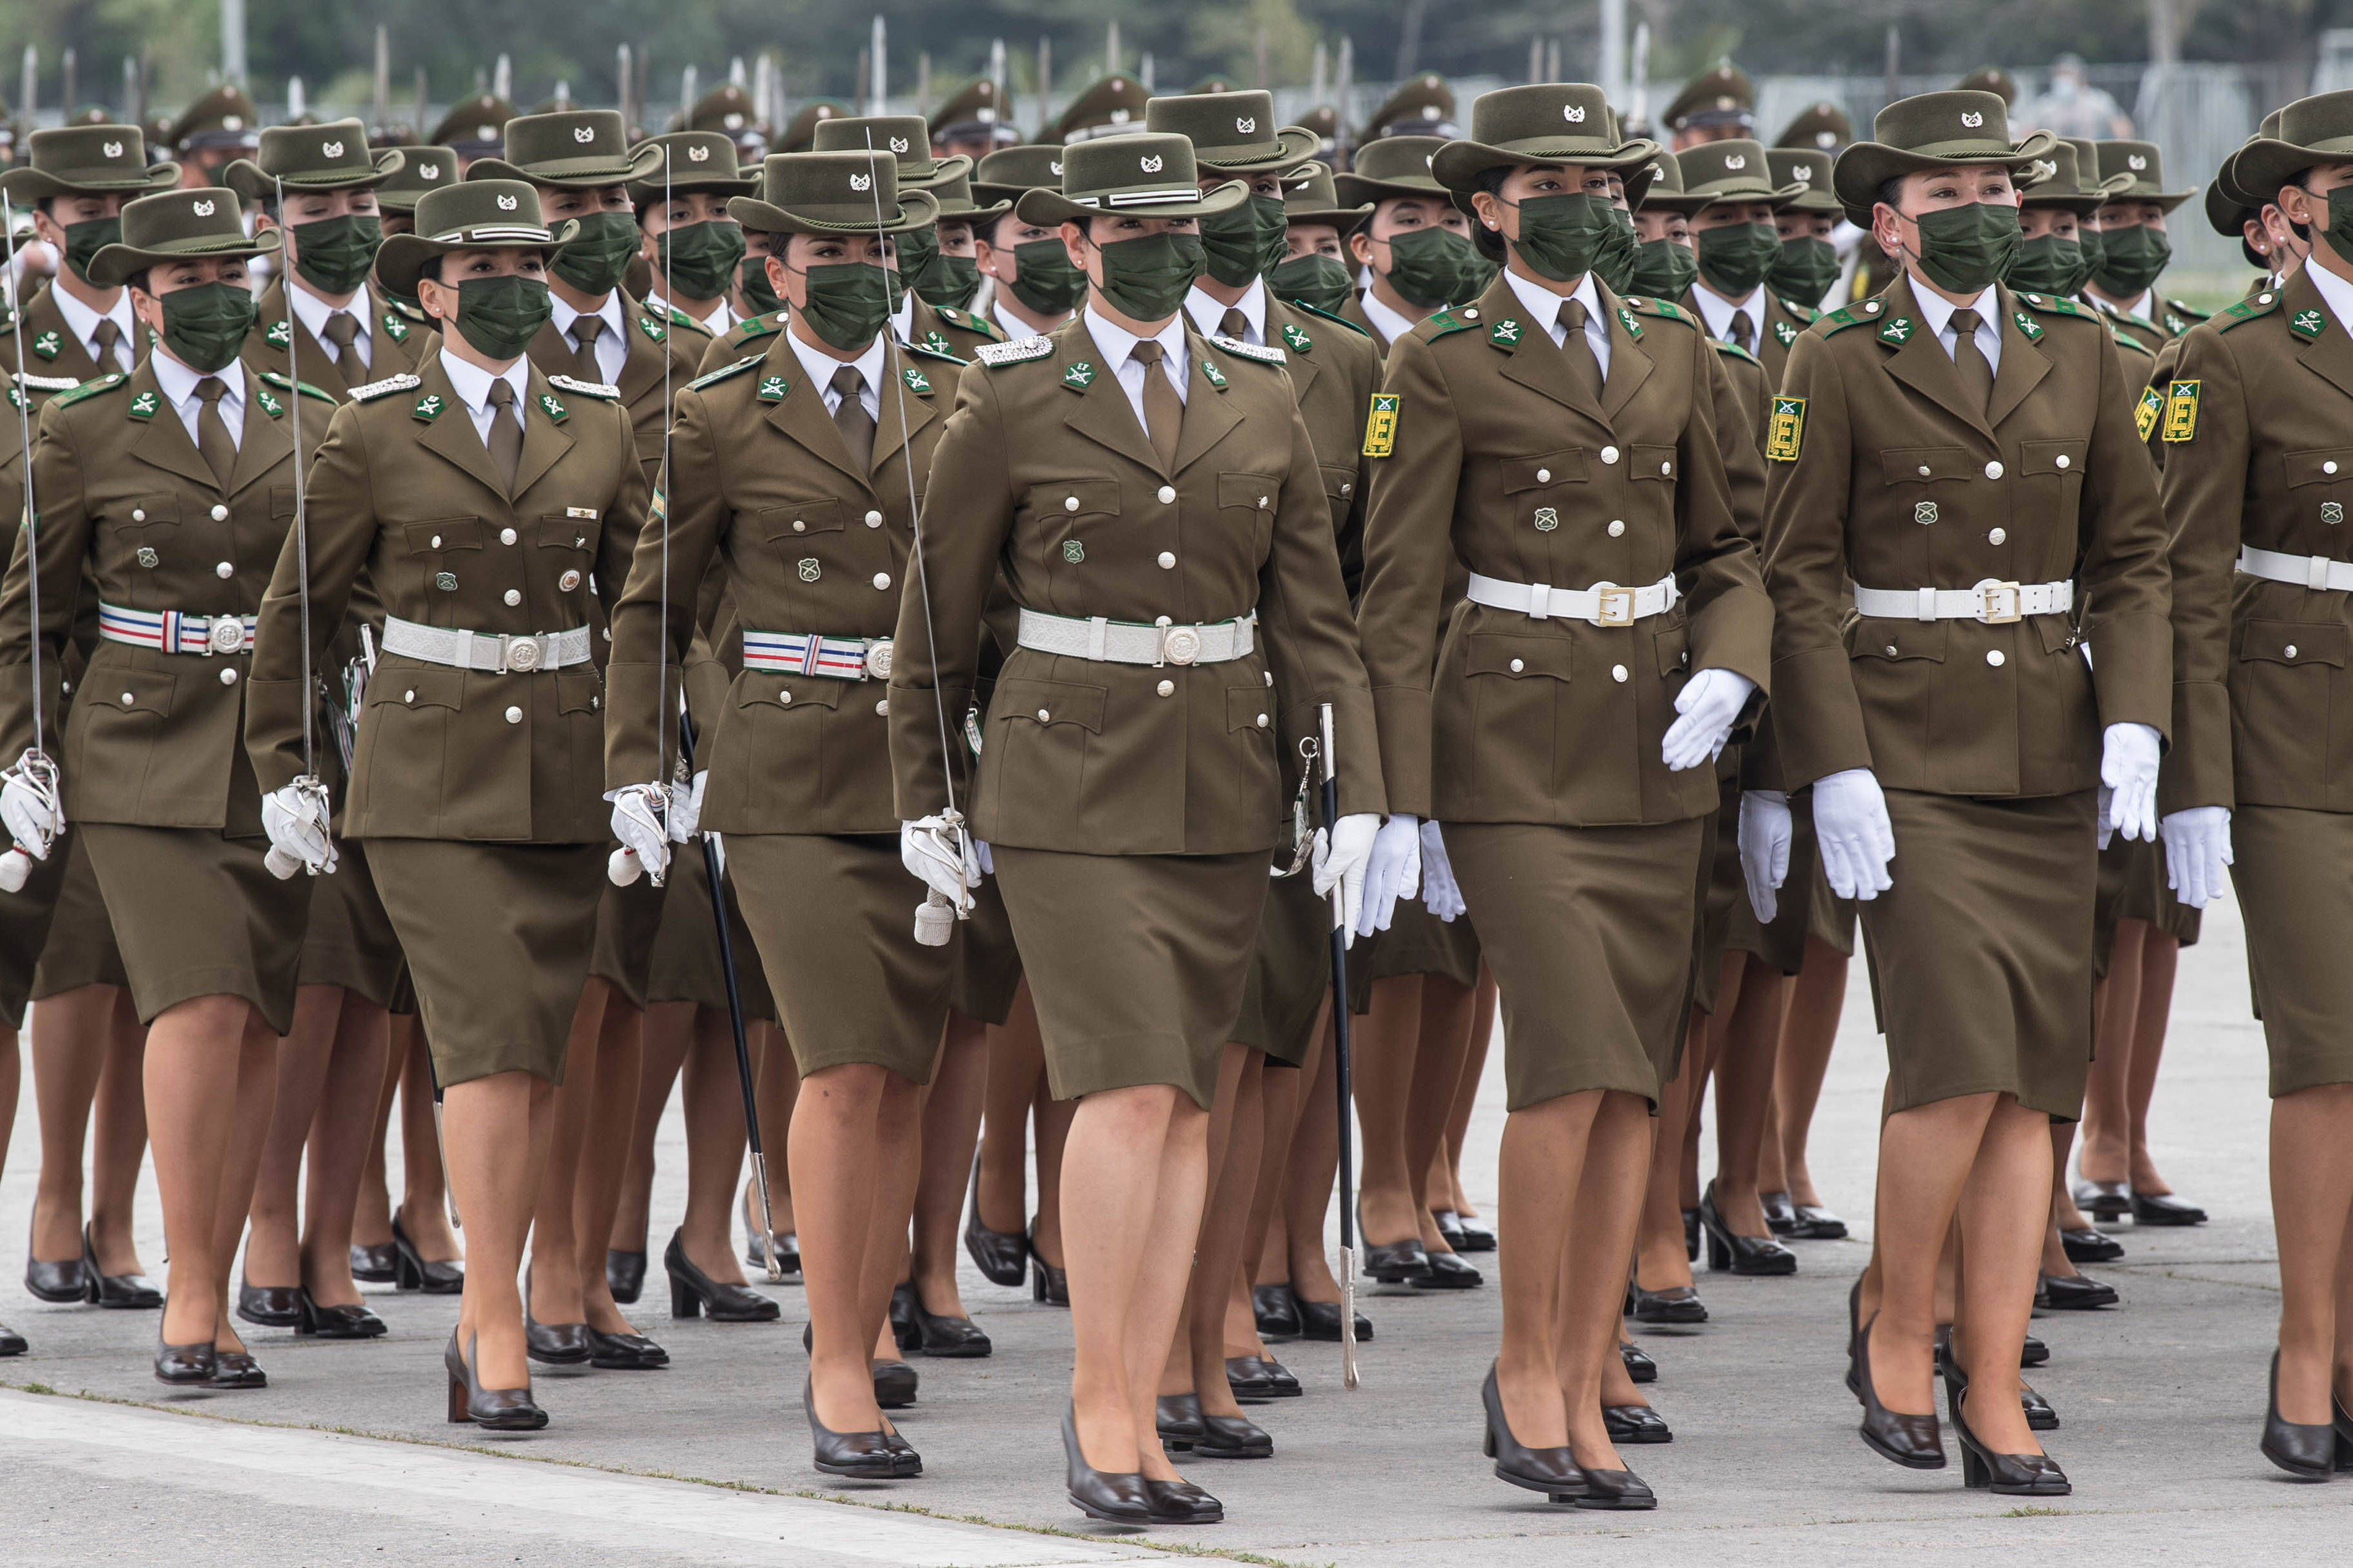 智利举行陆军节阅兵式